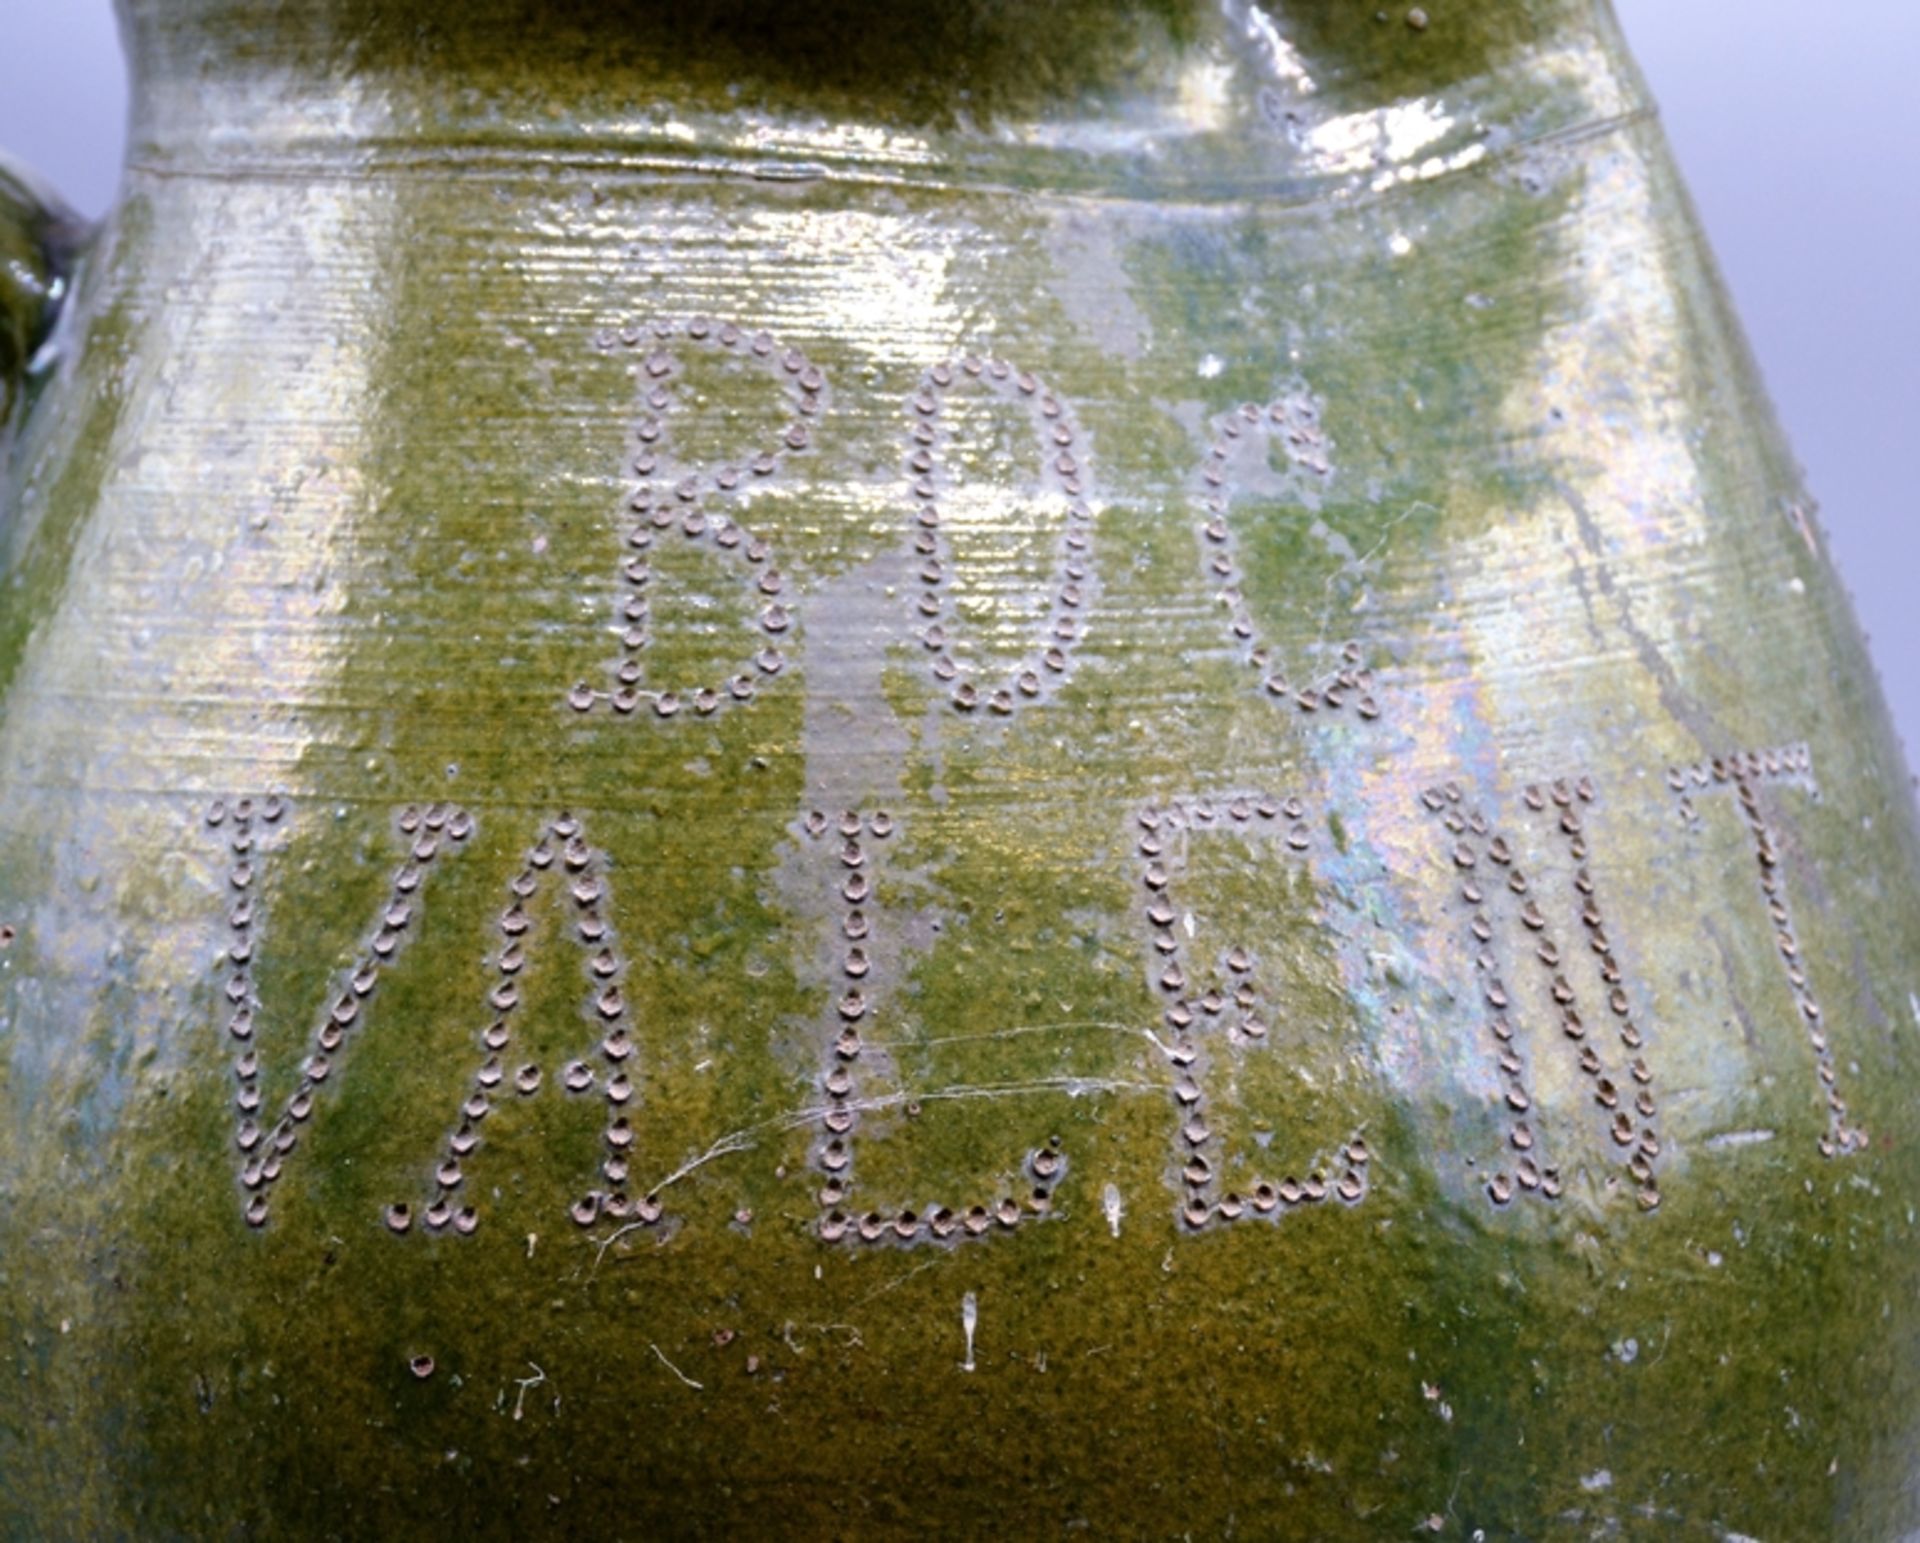 Kanne Hafnerware Keramik datiert 1934 oben, grün glasiert, Inschrift "Zivi Prosnicki" wohl Kroatien - Bild 2 aus 6